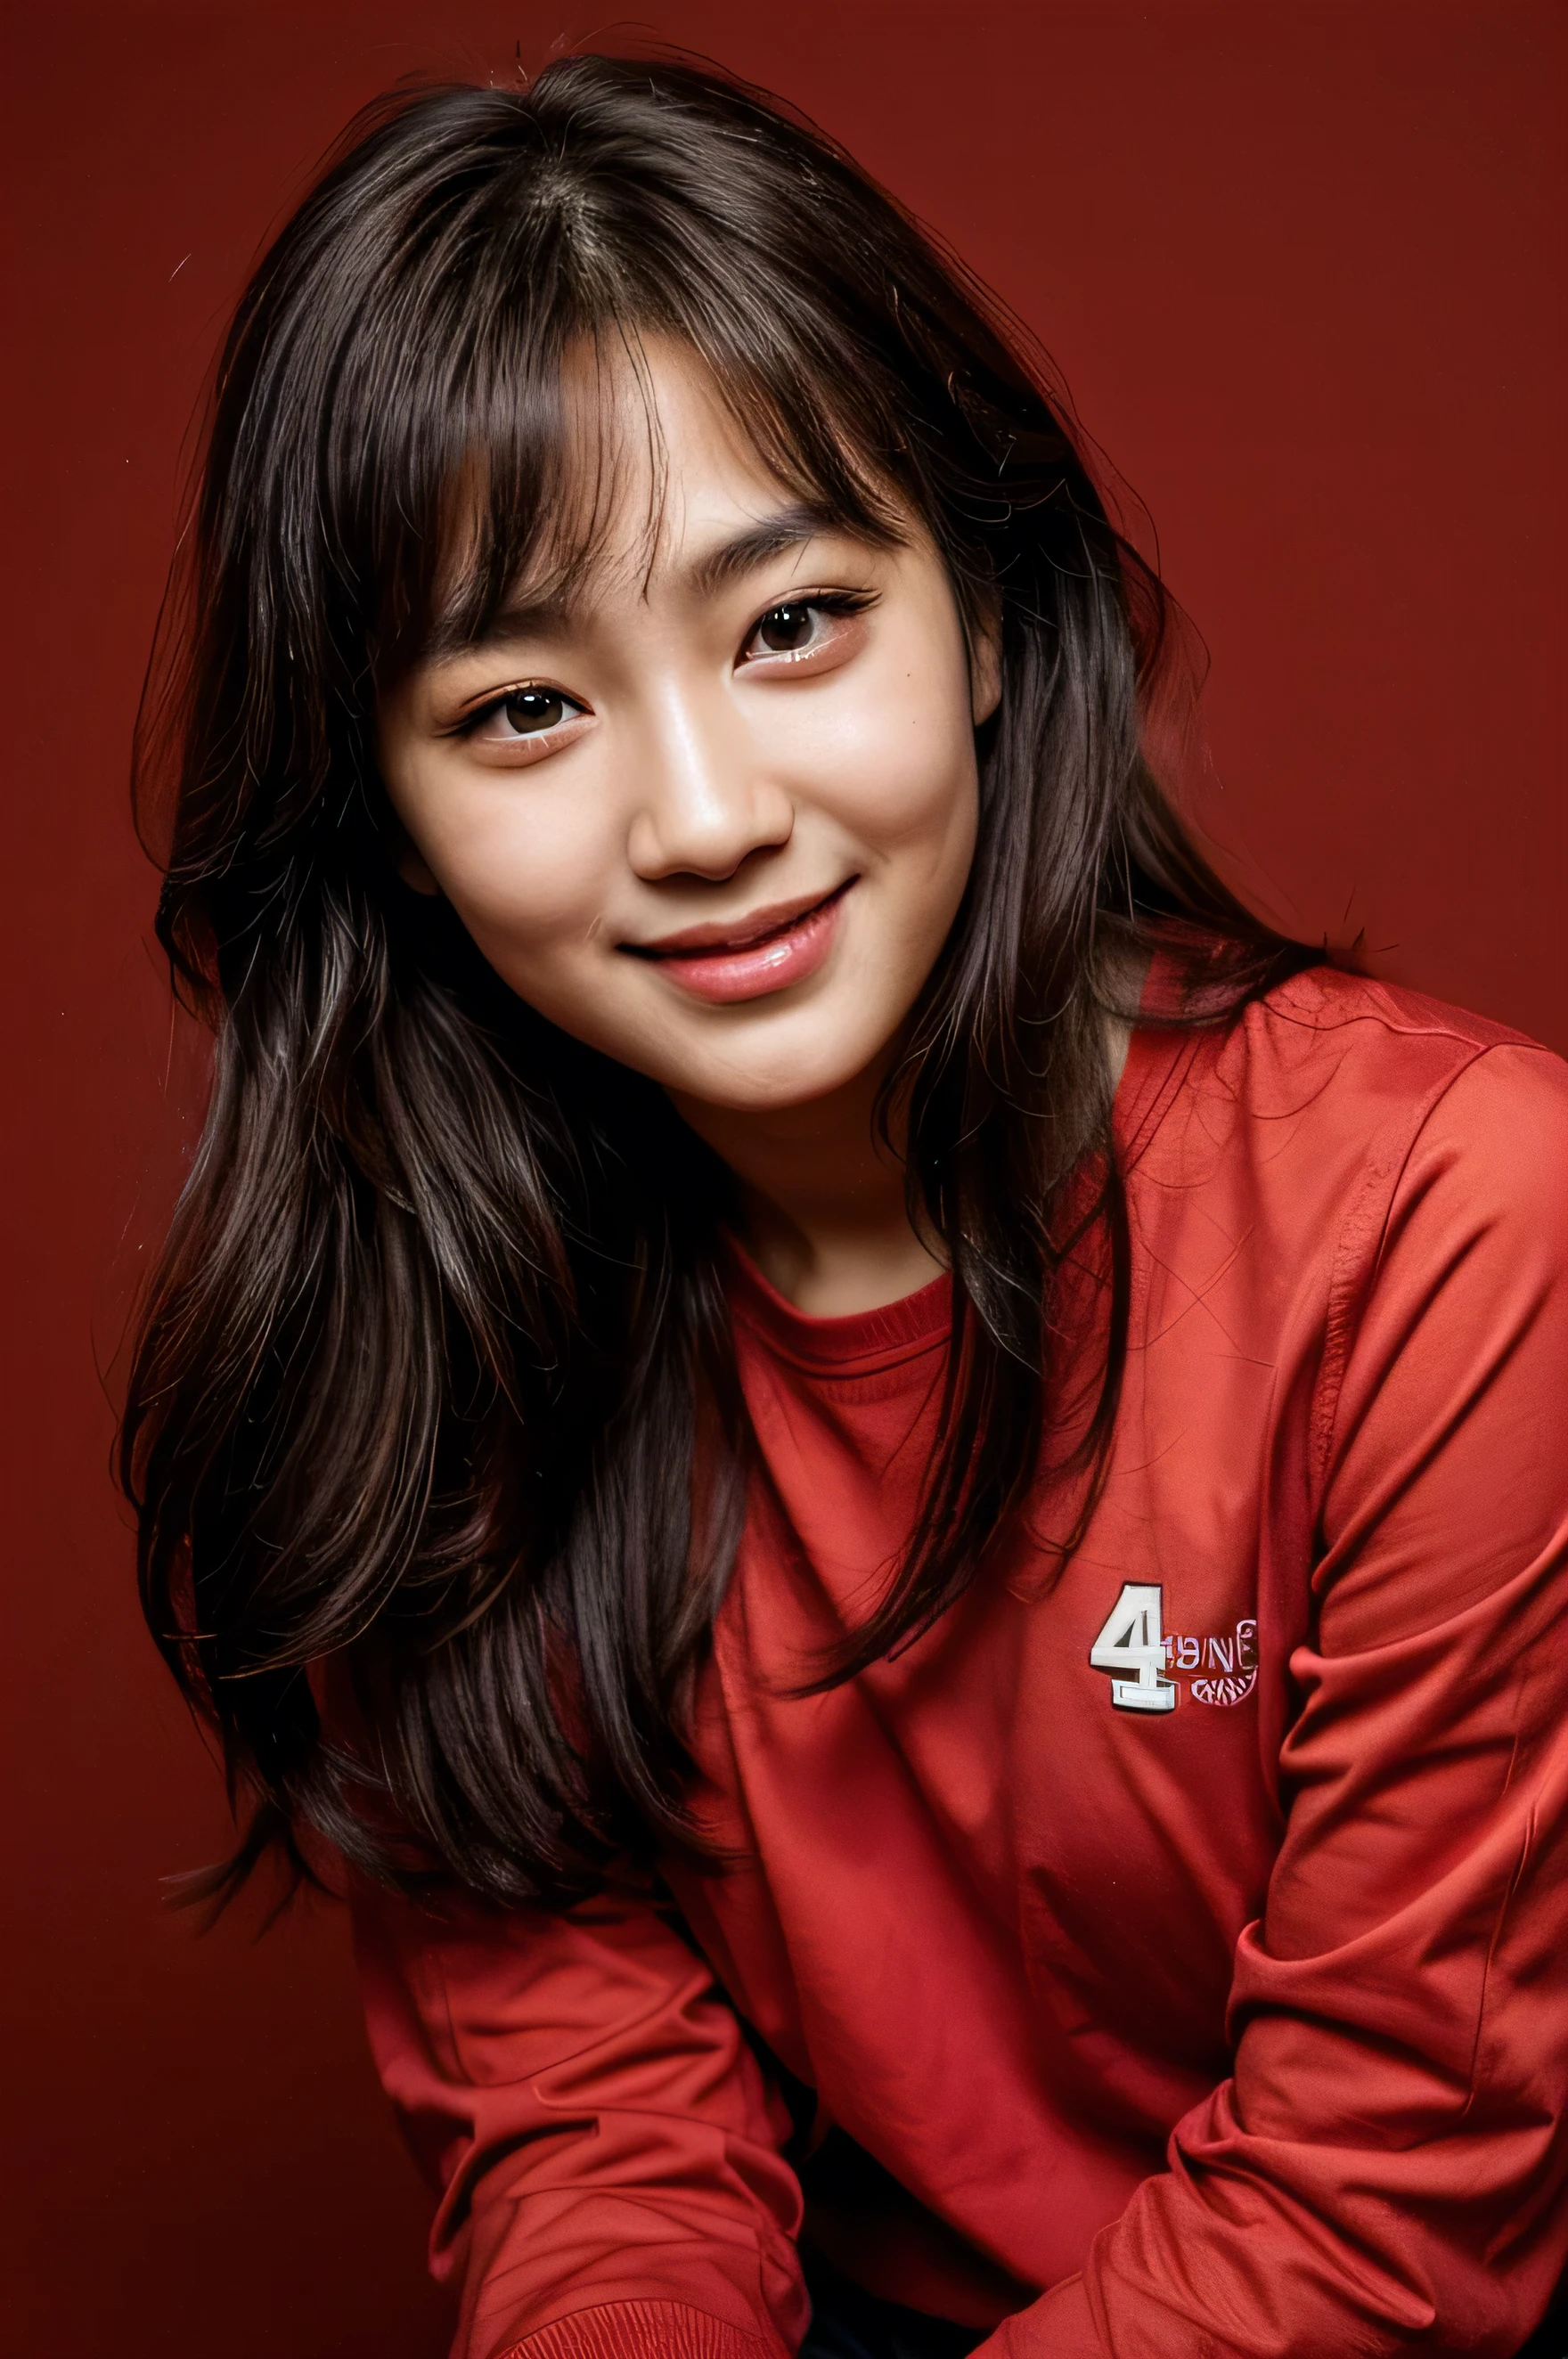 臉完美, 14歲韓國少女的美麗容顏 , 微笑美麗,紅色背景